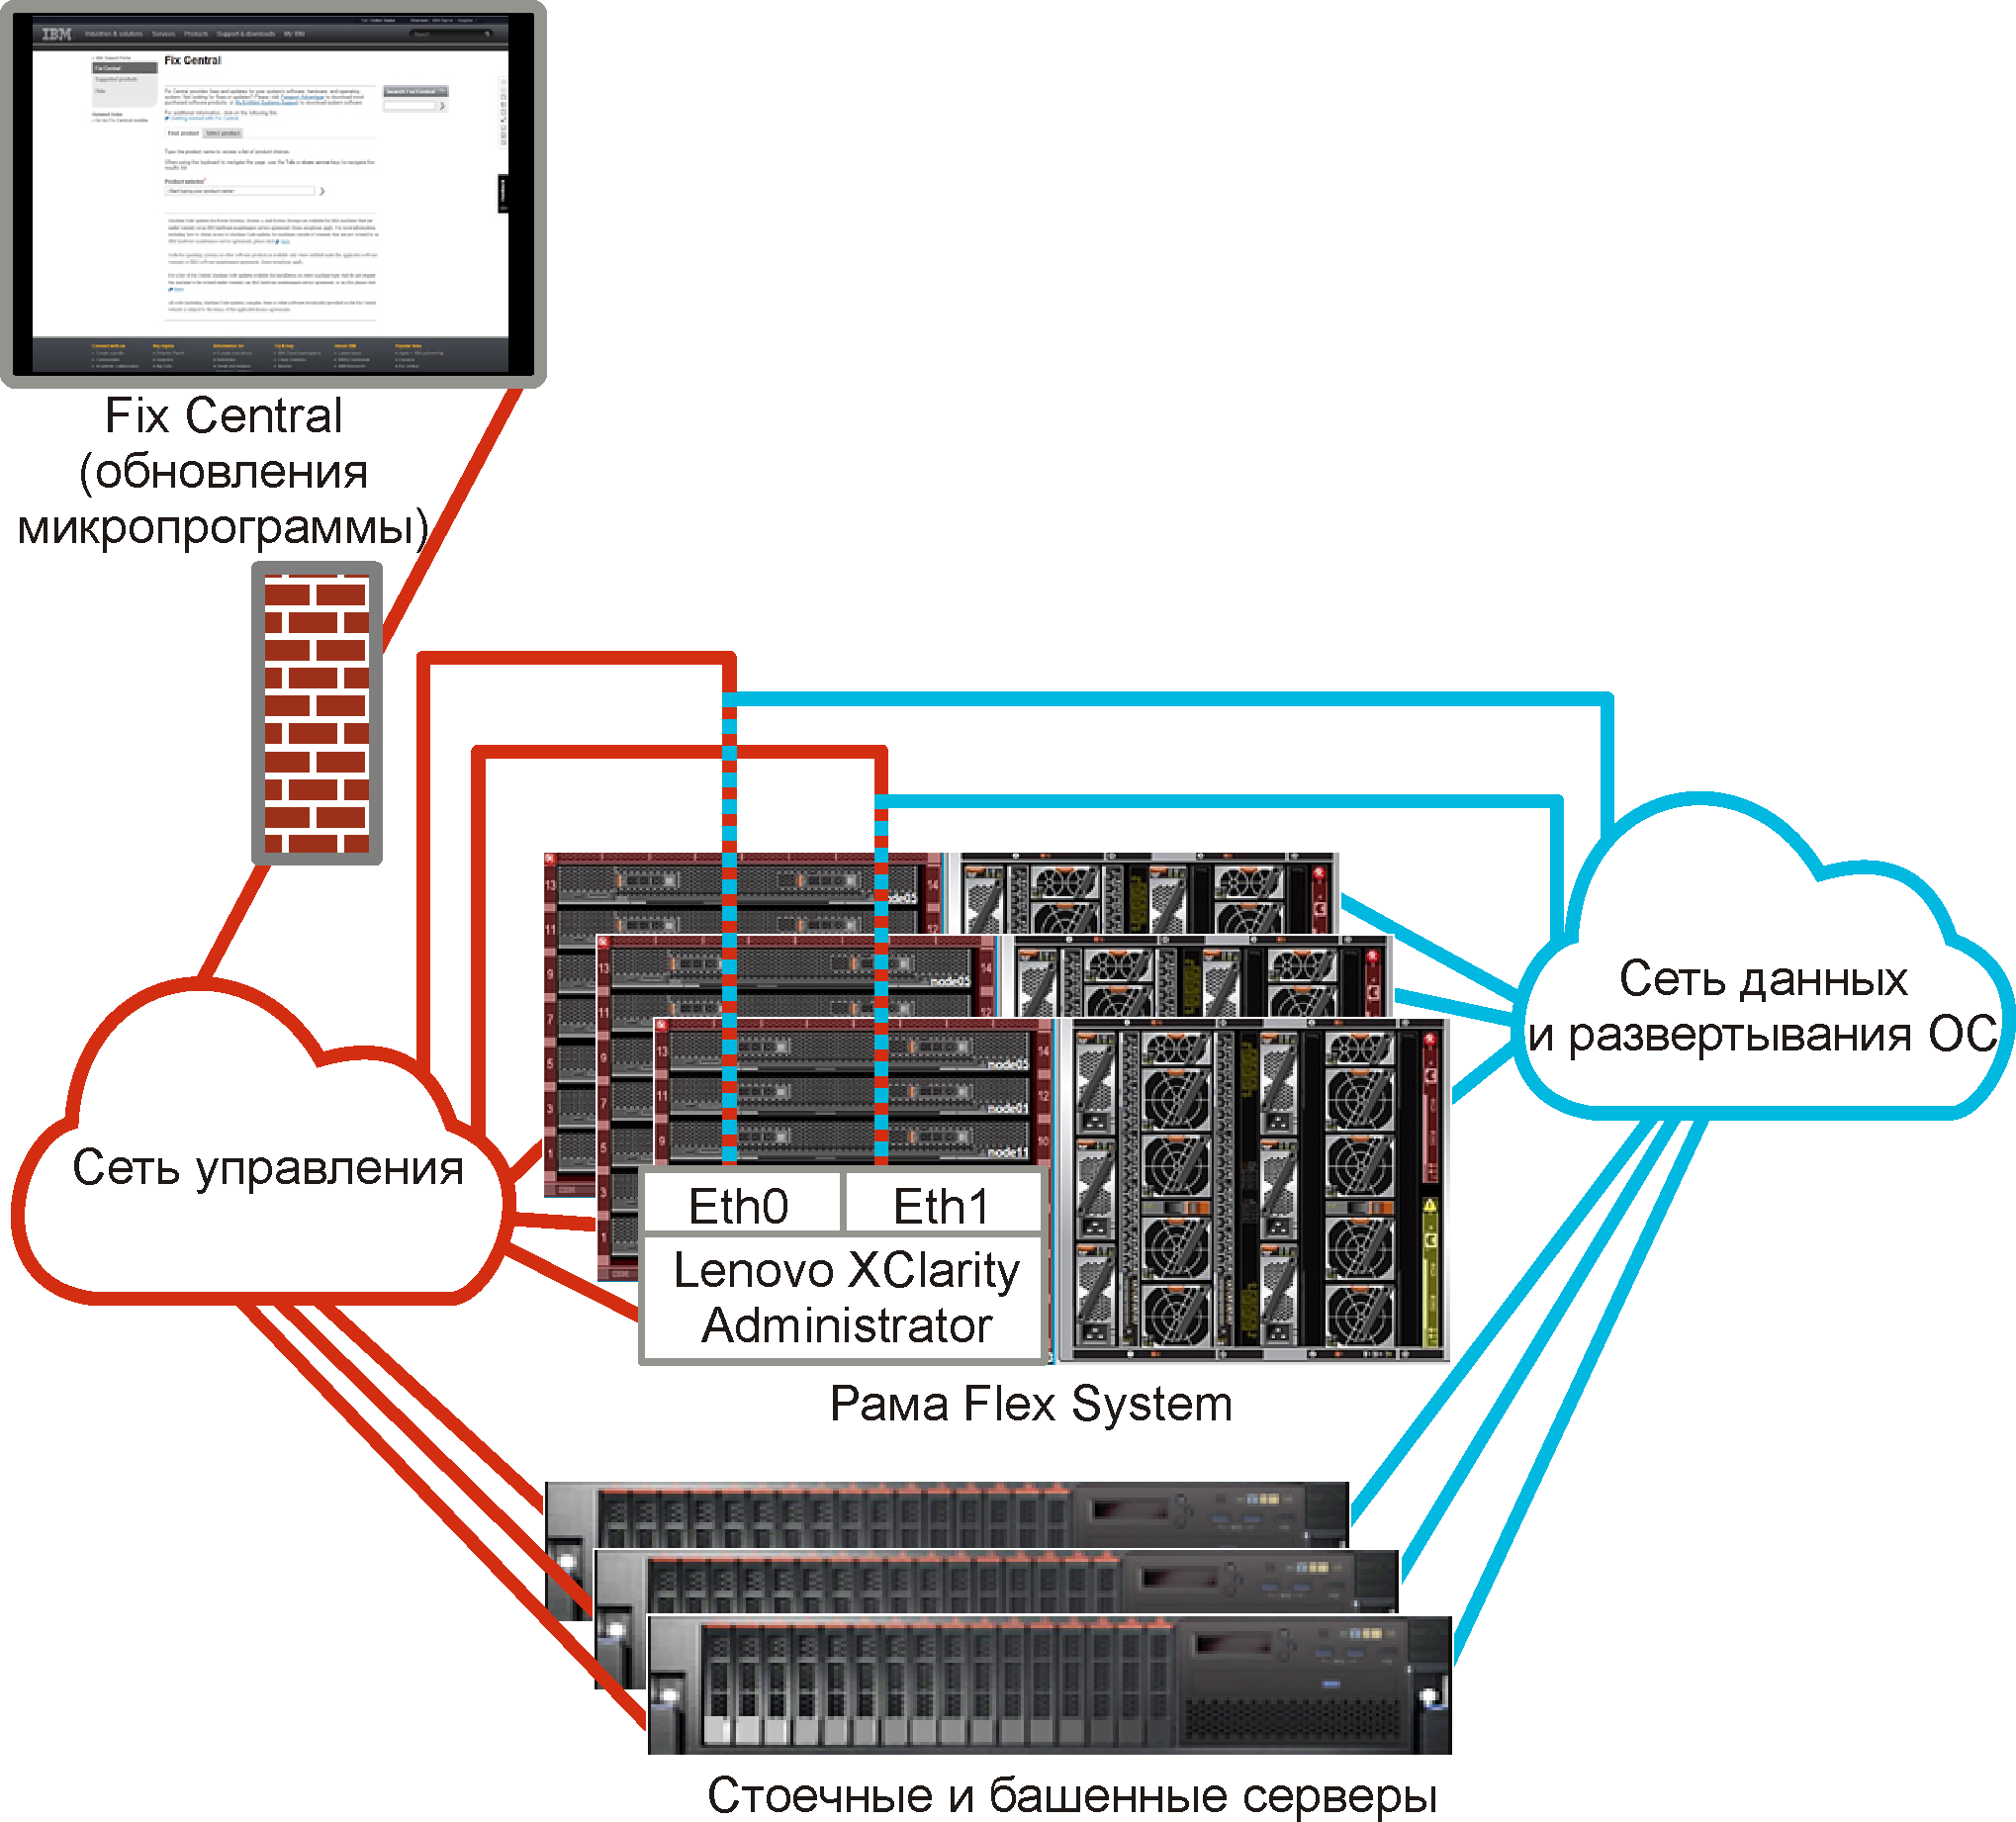 Рисунок с изображением общего представления виртуально разделенных сетей данных и управления, где сеть операционной системы является частью сети данных